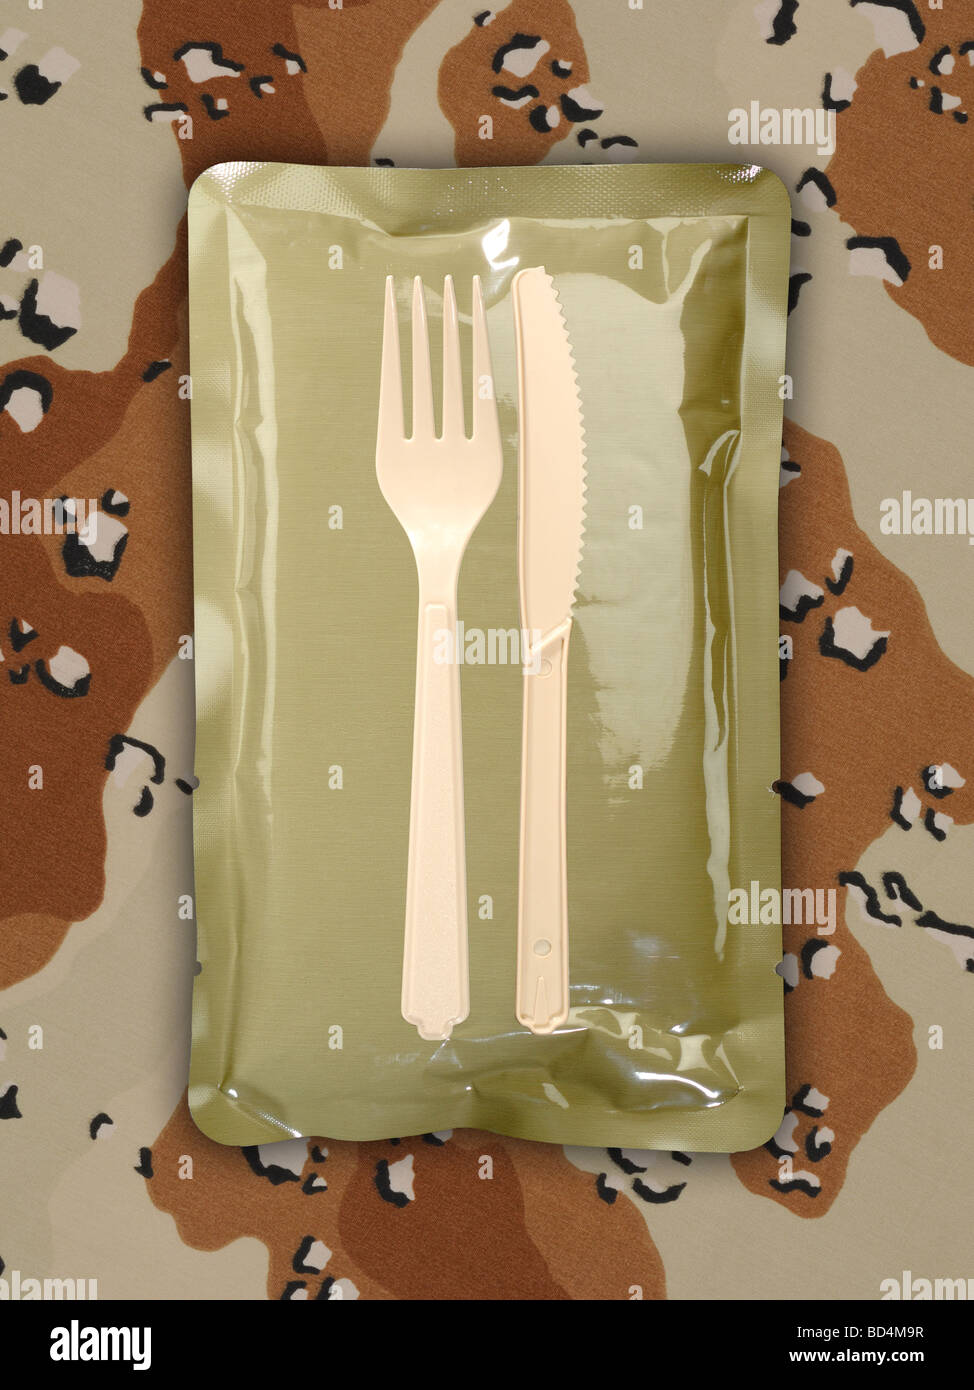 Militare una razione di cibo pacchetto con stoviglie su uno sfondo di tan camouflage Foto Stock